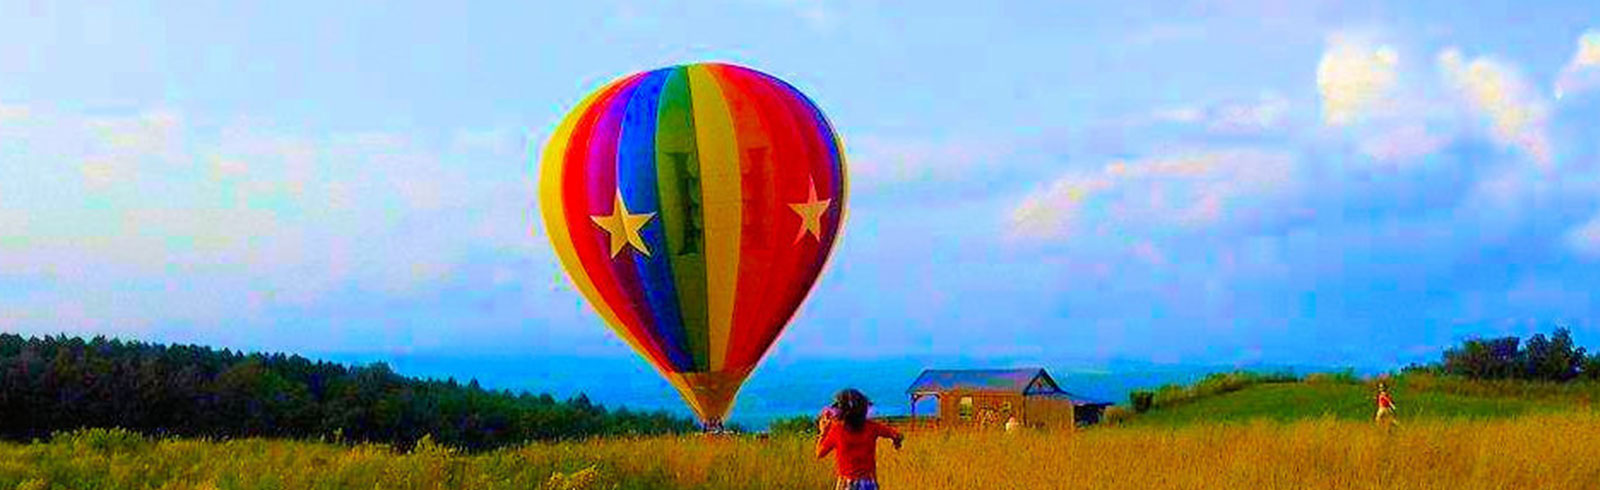 Tiger Balloon Safaris